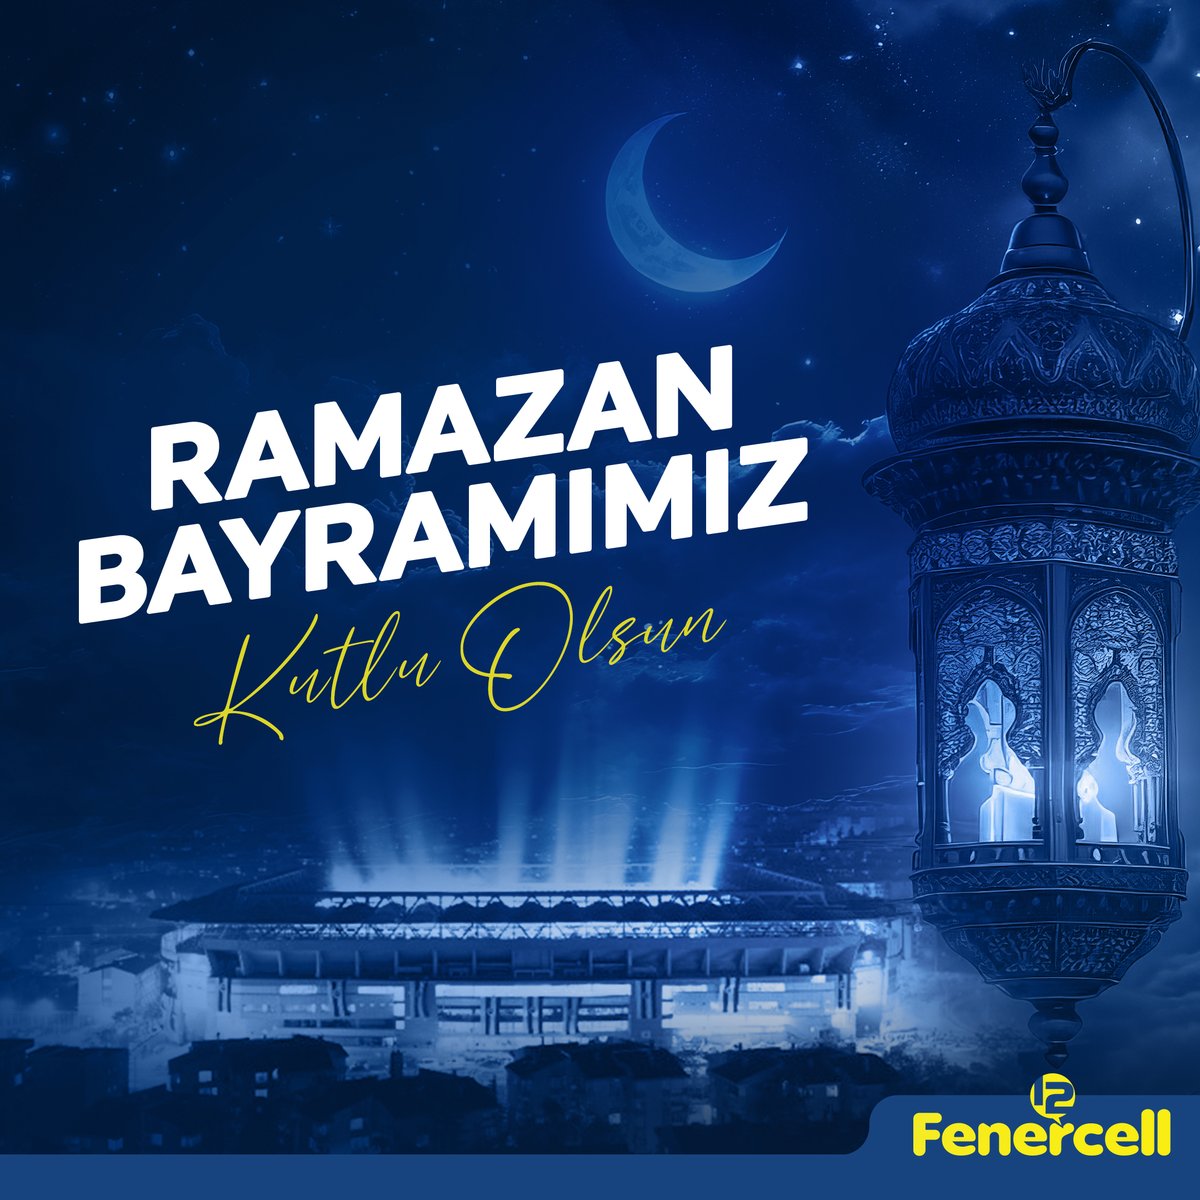 Ramazan Bayramı’nın size ve sevdiklerinize sevgi ve mutluluk getirmesini dileriz. Ramazan Bayramımız kutlu olsun. #fenercell #fenerbahçe #ramazanbayramı